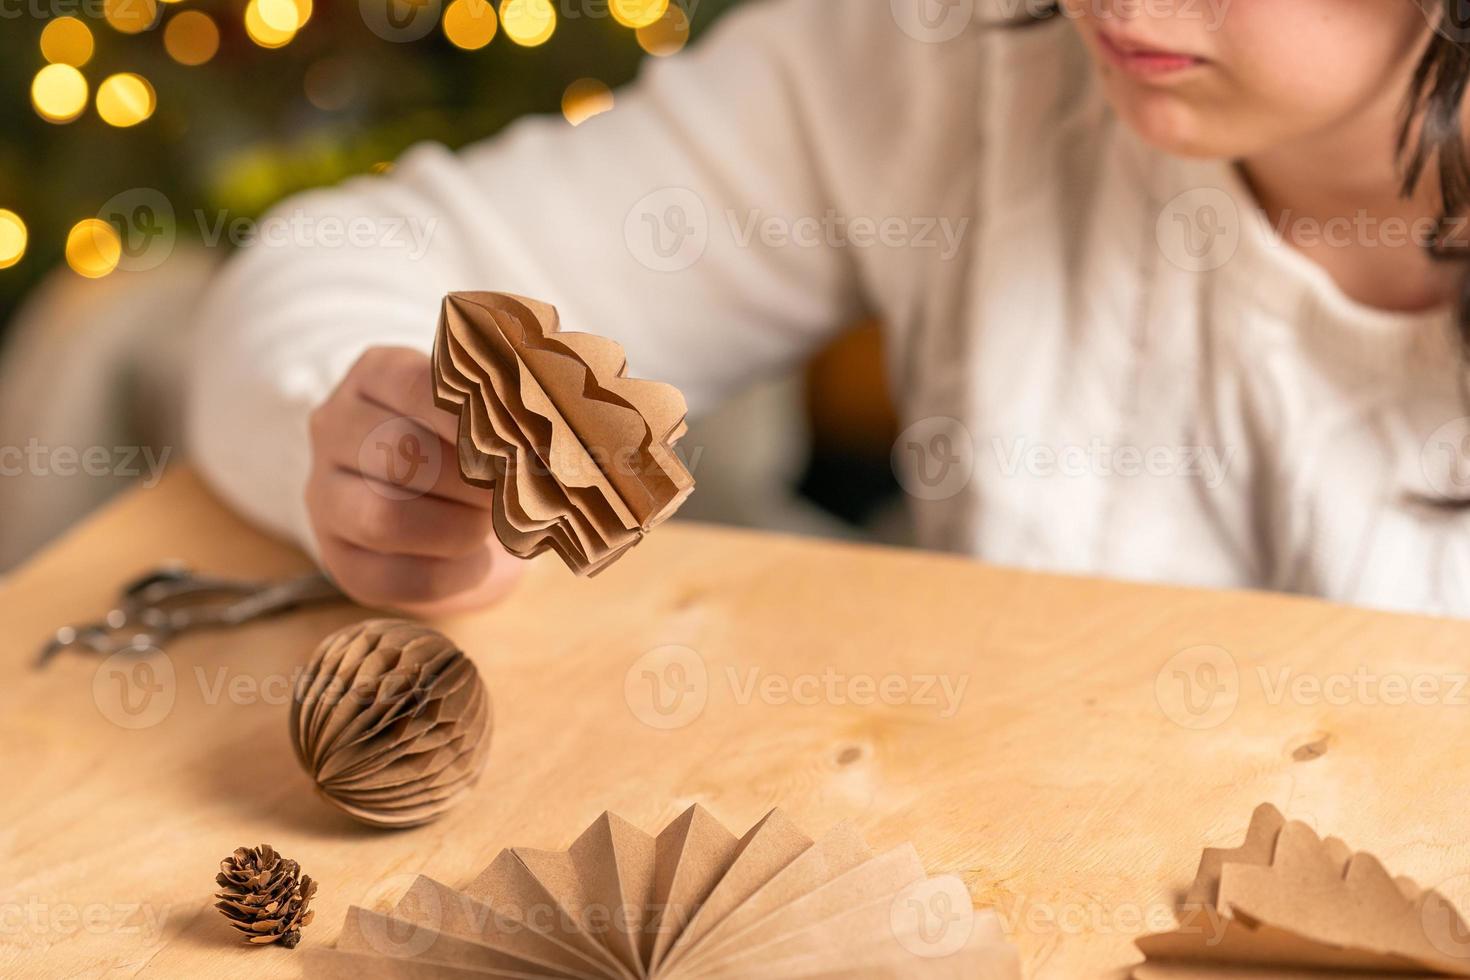 la niña hace decoraciones para árboles de navidad con papel con sus propias manos. paso 5. instrucción paso a paso foto